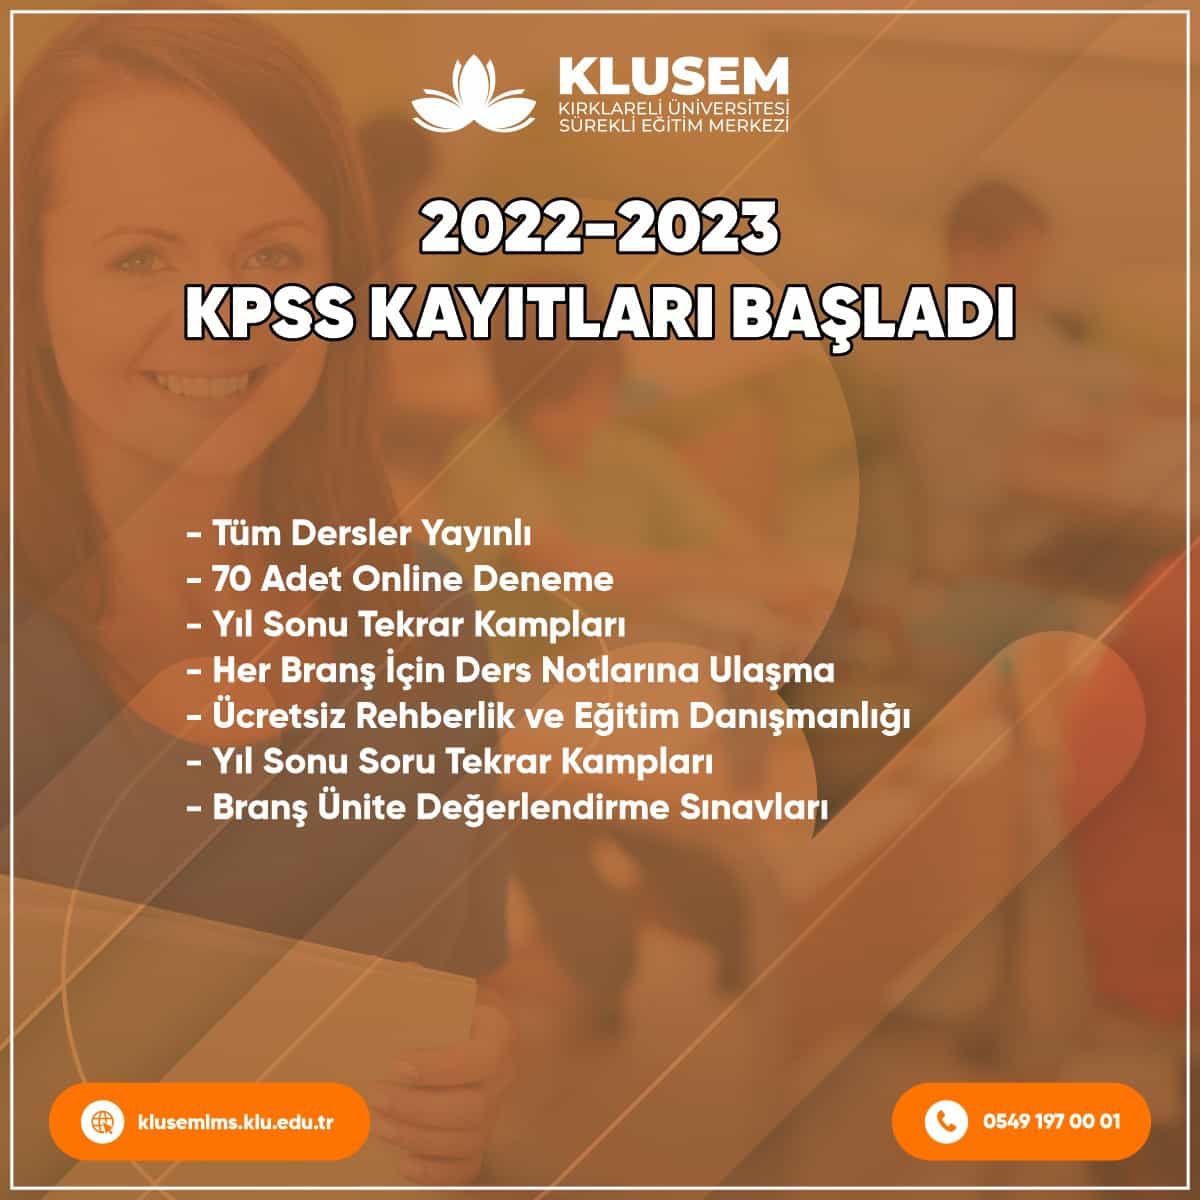 KPSS Genel Kültür-Genel Yetenek-Eğitim Bilimleri-ÖABT Kursu